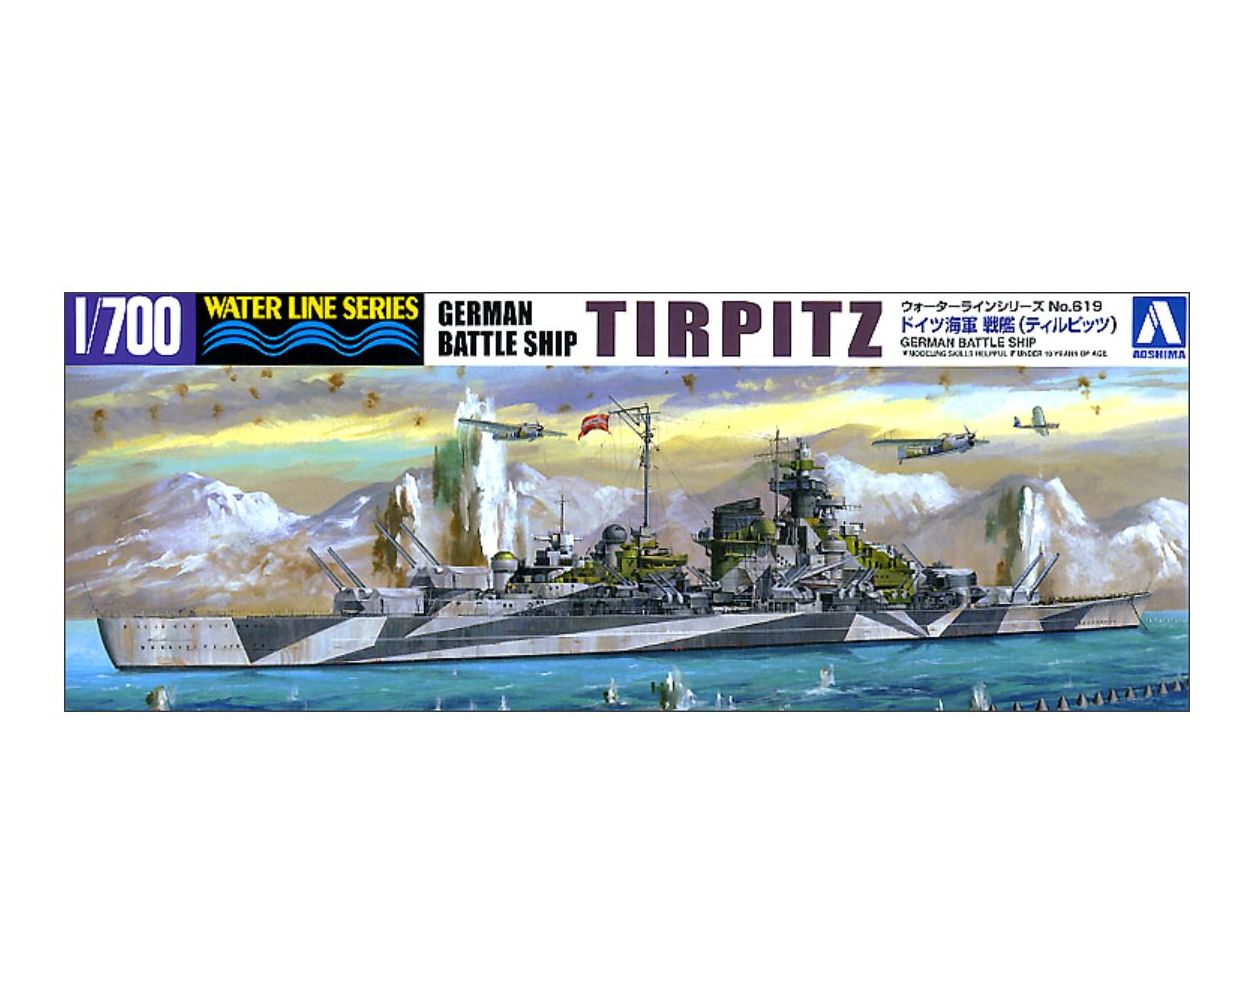 619 Aoshima 1/700 Scale Waterline Model Kit WWII German Battleship Tirpitz 